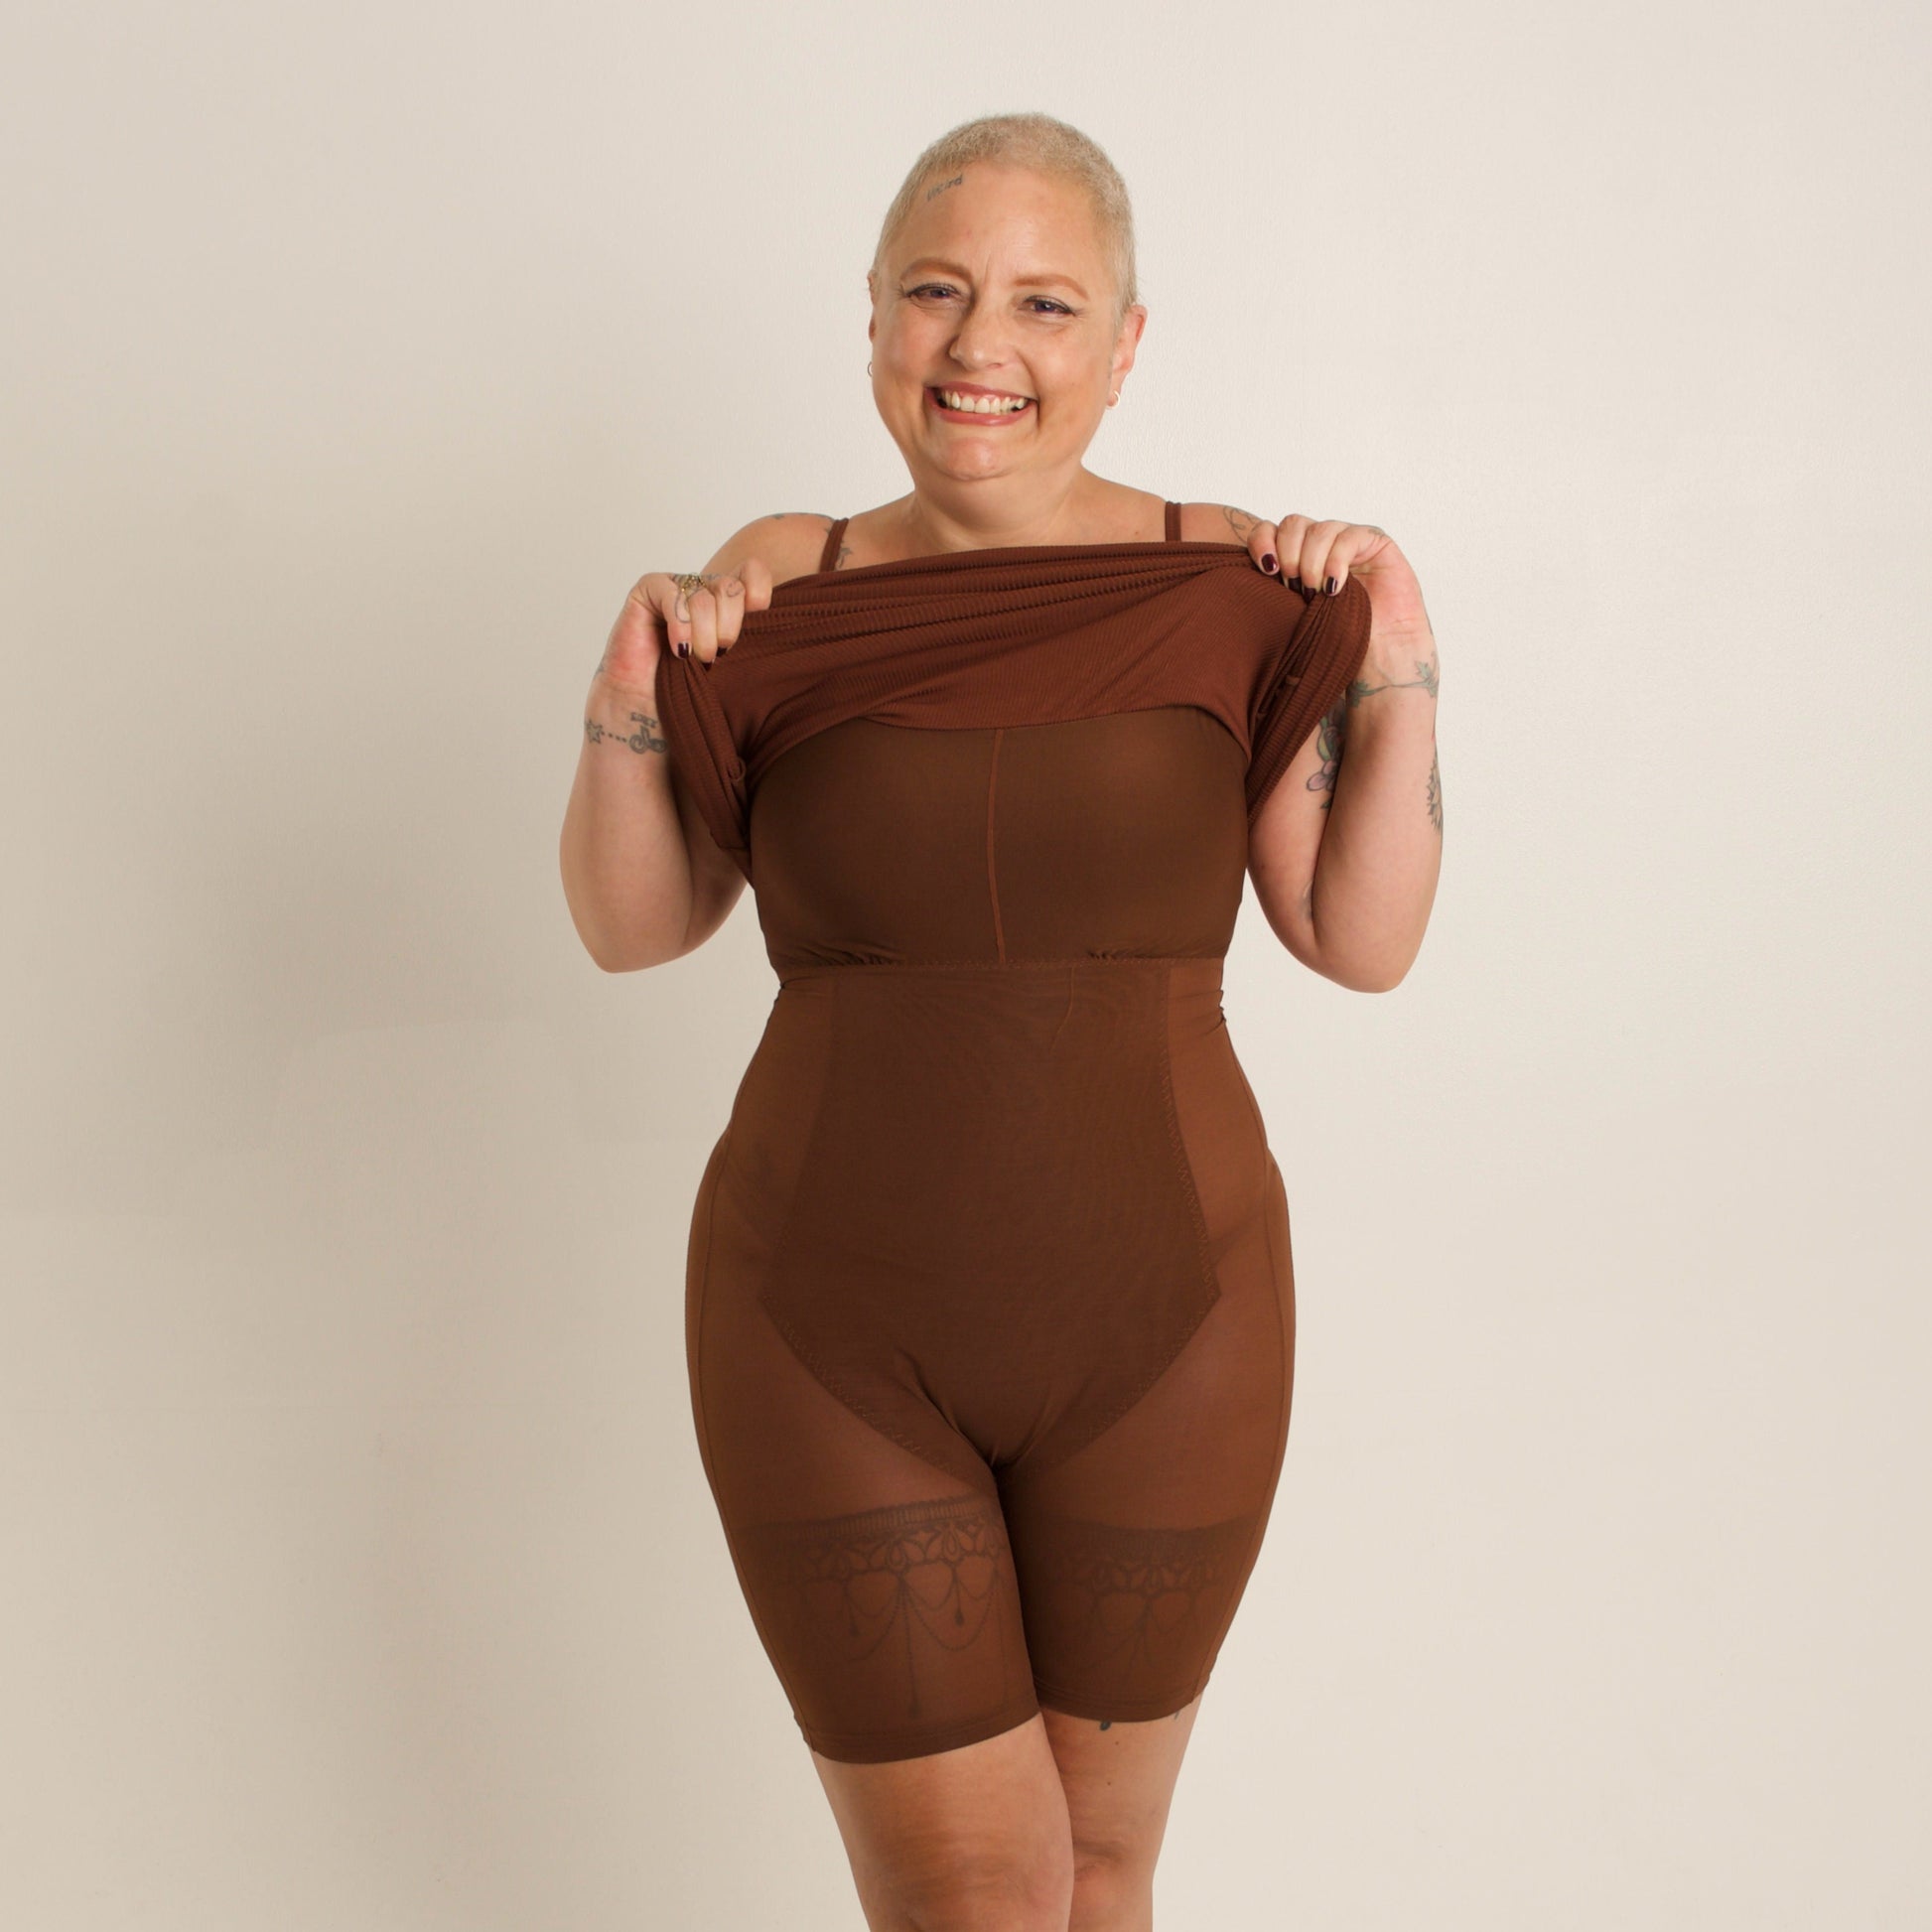 KLVEE Shapewear for Women Tummy … curated on LTK